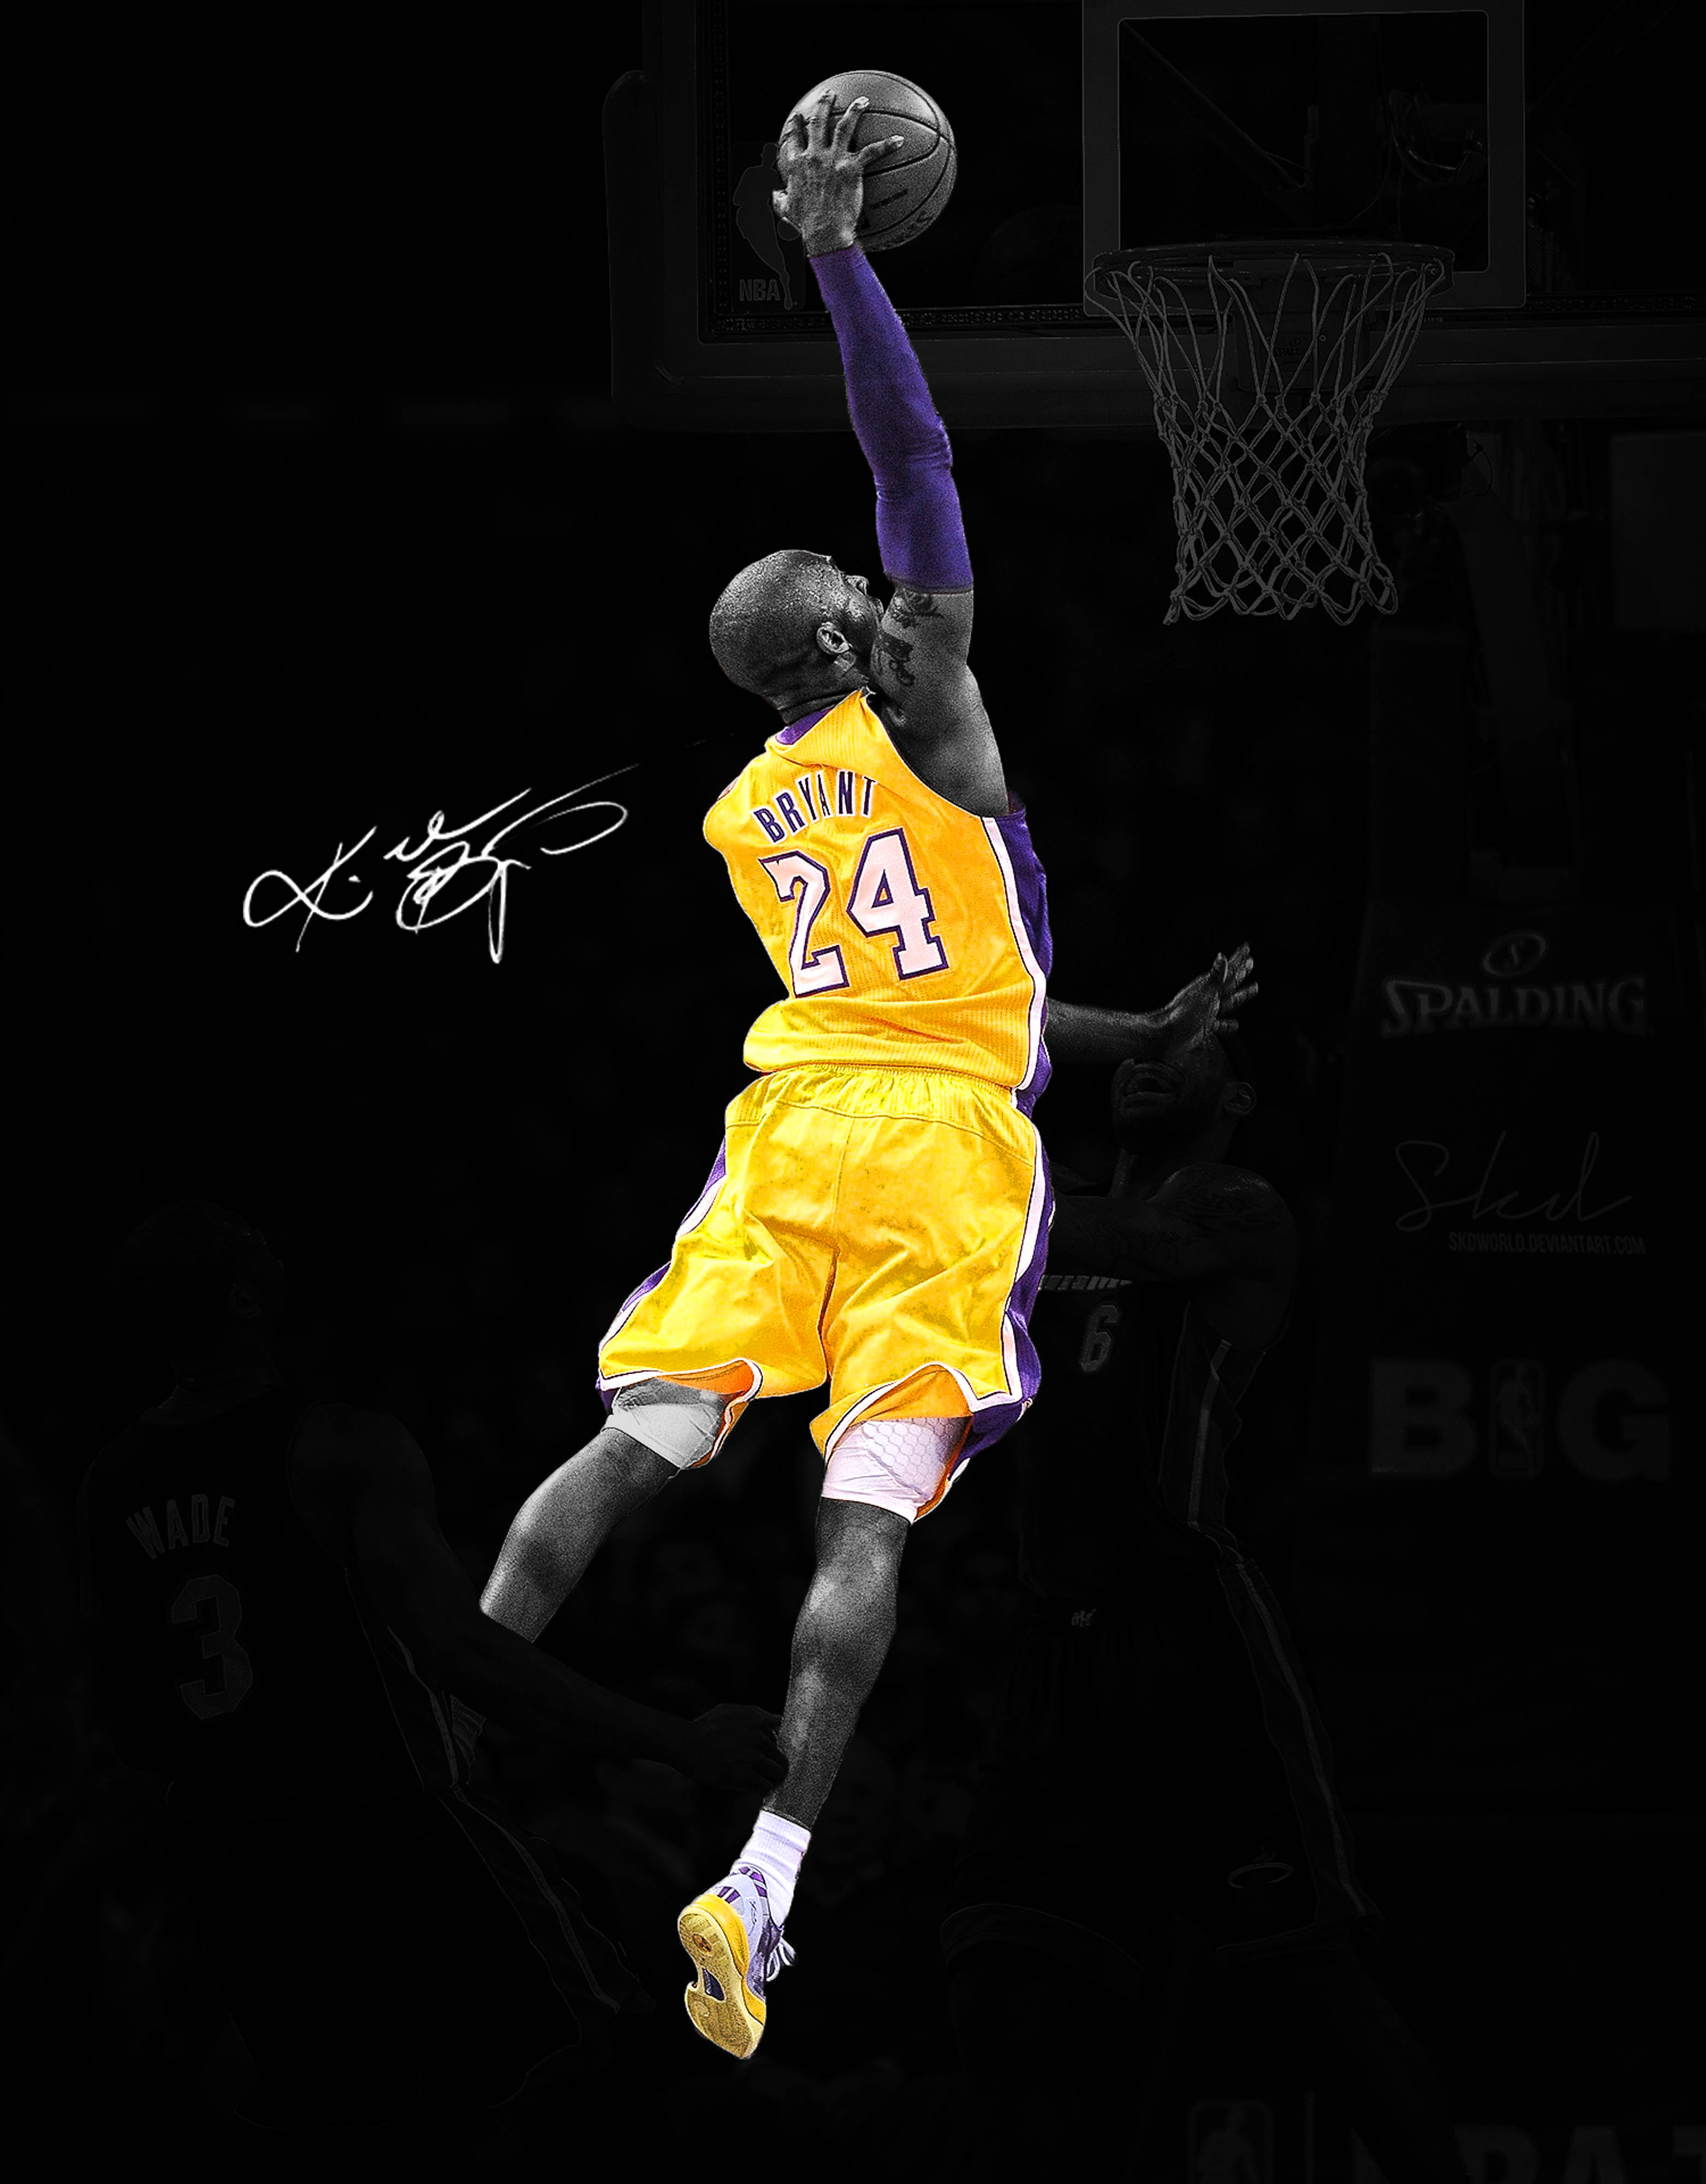 Tải hình nền Kobe Bryant cực đẹp để trang trí màn hình điện thoại của bạn. Có hàng nghìn hình nền Kobe Bryant chất lượng cao để bạn lựa chọn. Hãy tải ngay để thể hiện tình yêu với cầu thủ huyền thoại này!